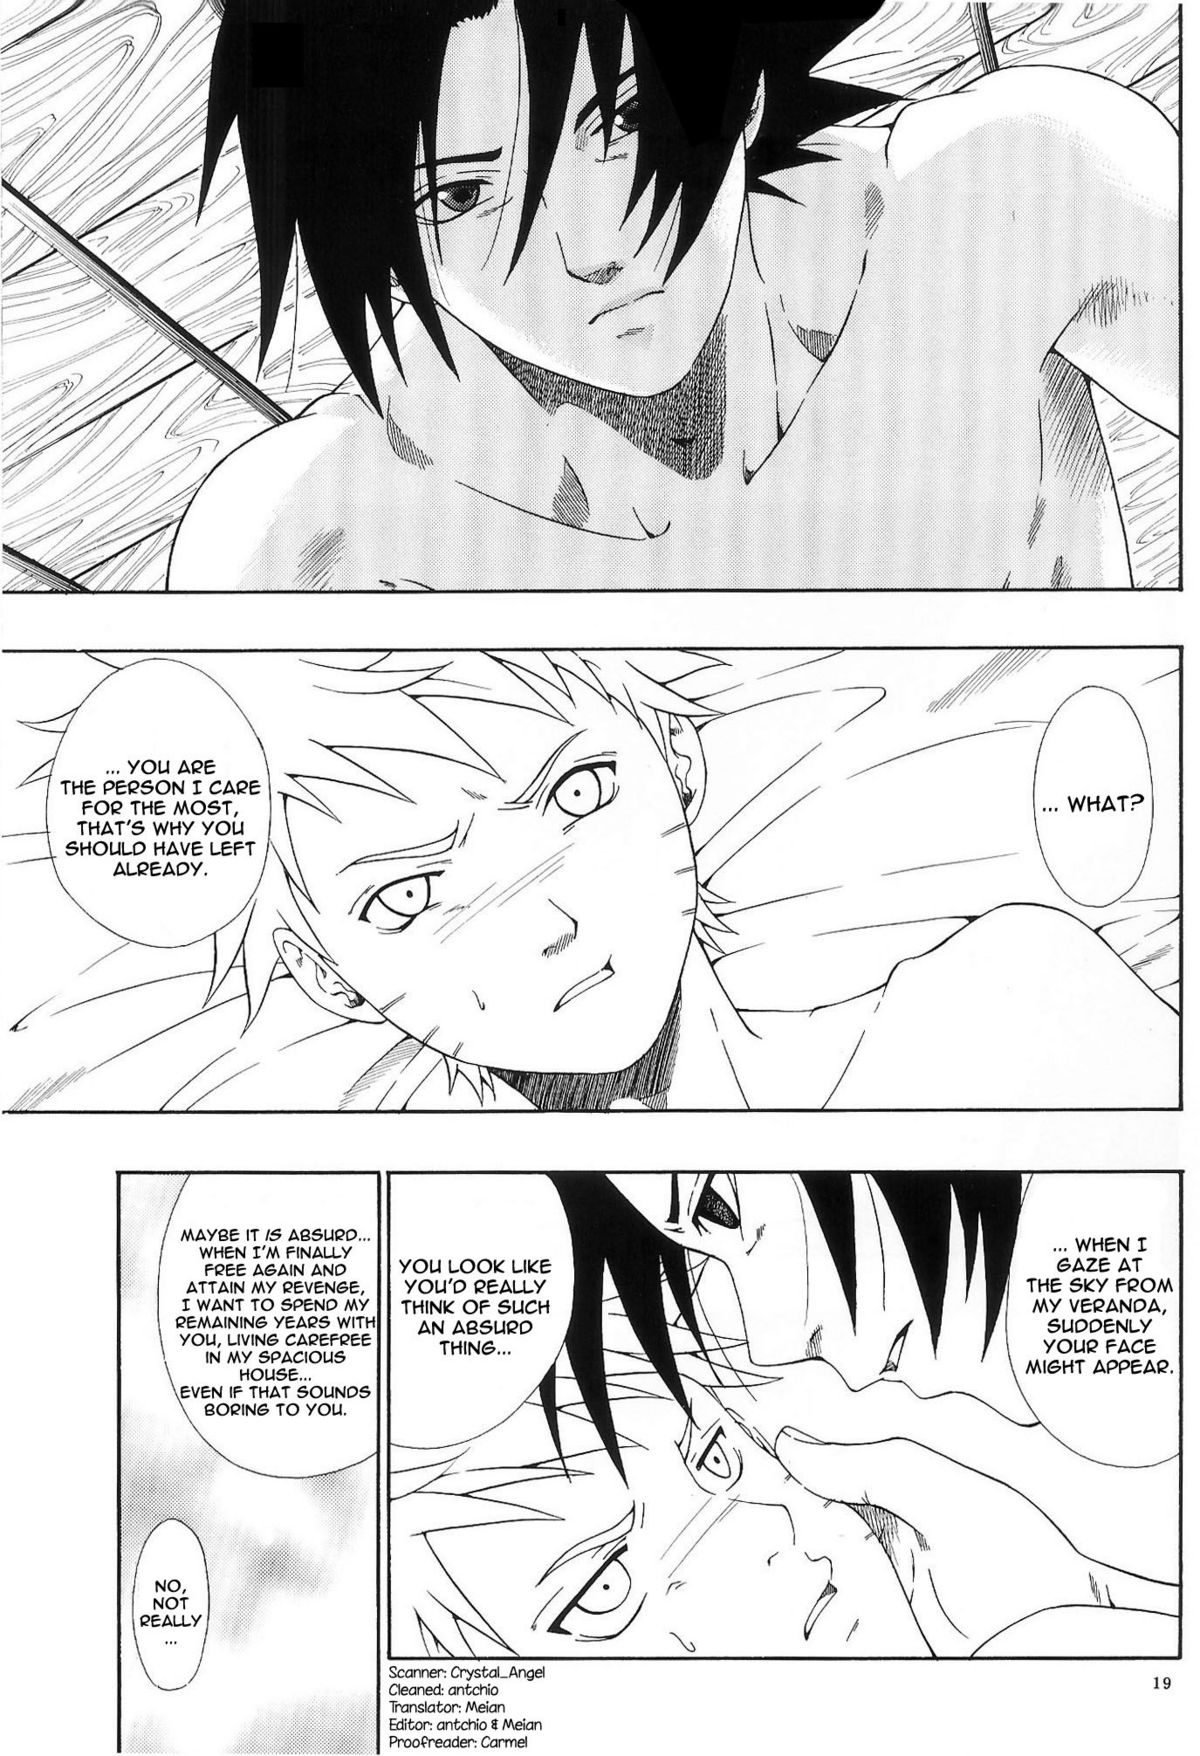 ERO ERO²: Volume 1.5  (NARUTO) [Sasuke X Naruto] YAOI -ENG- page 18 full